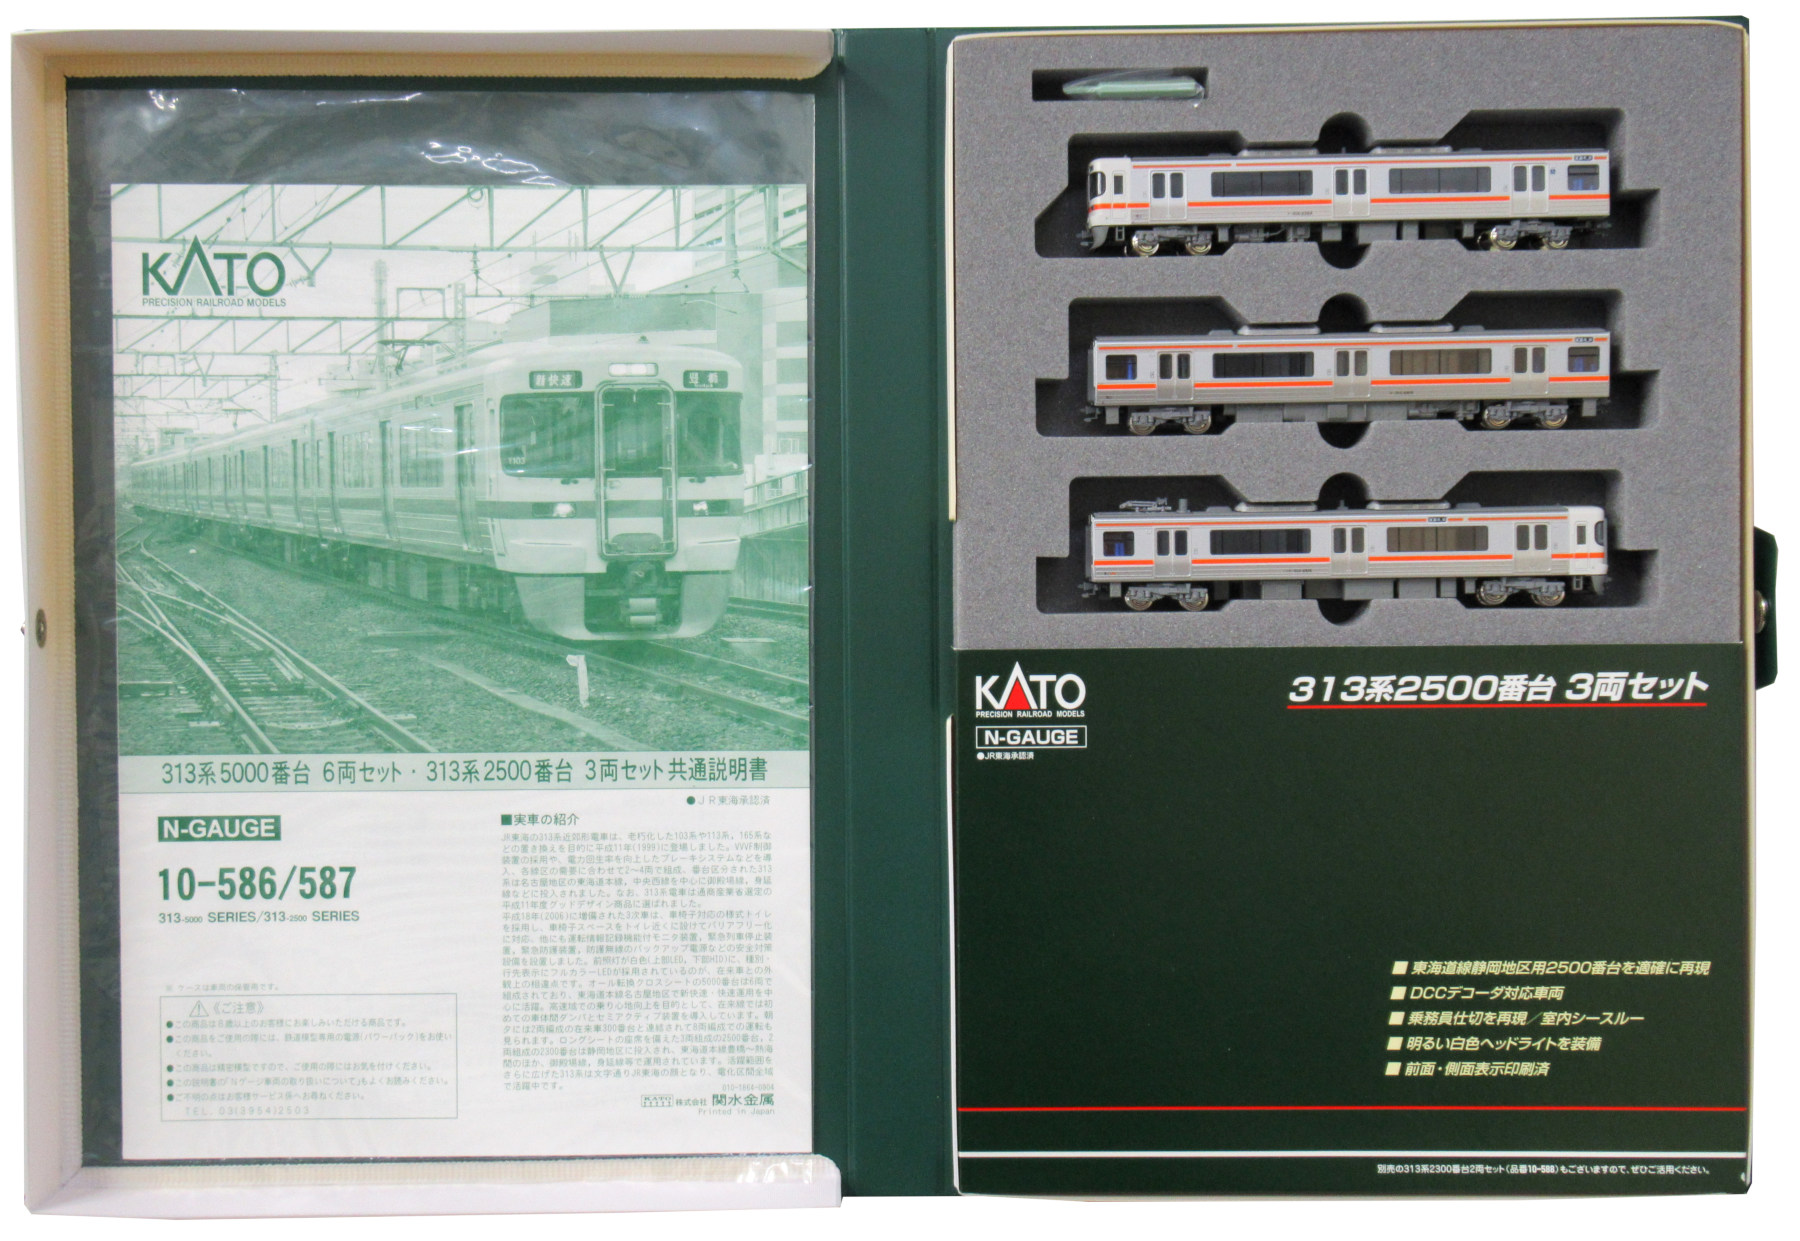 公式]鉄道模型(JR・国鉄 形式別(N)、近郊形車両、313系)カテゴリ